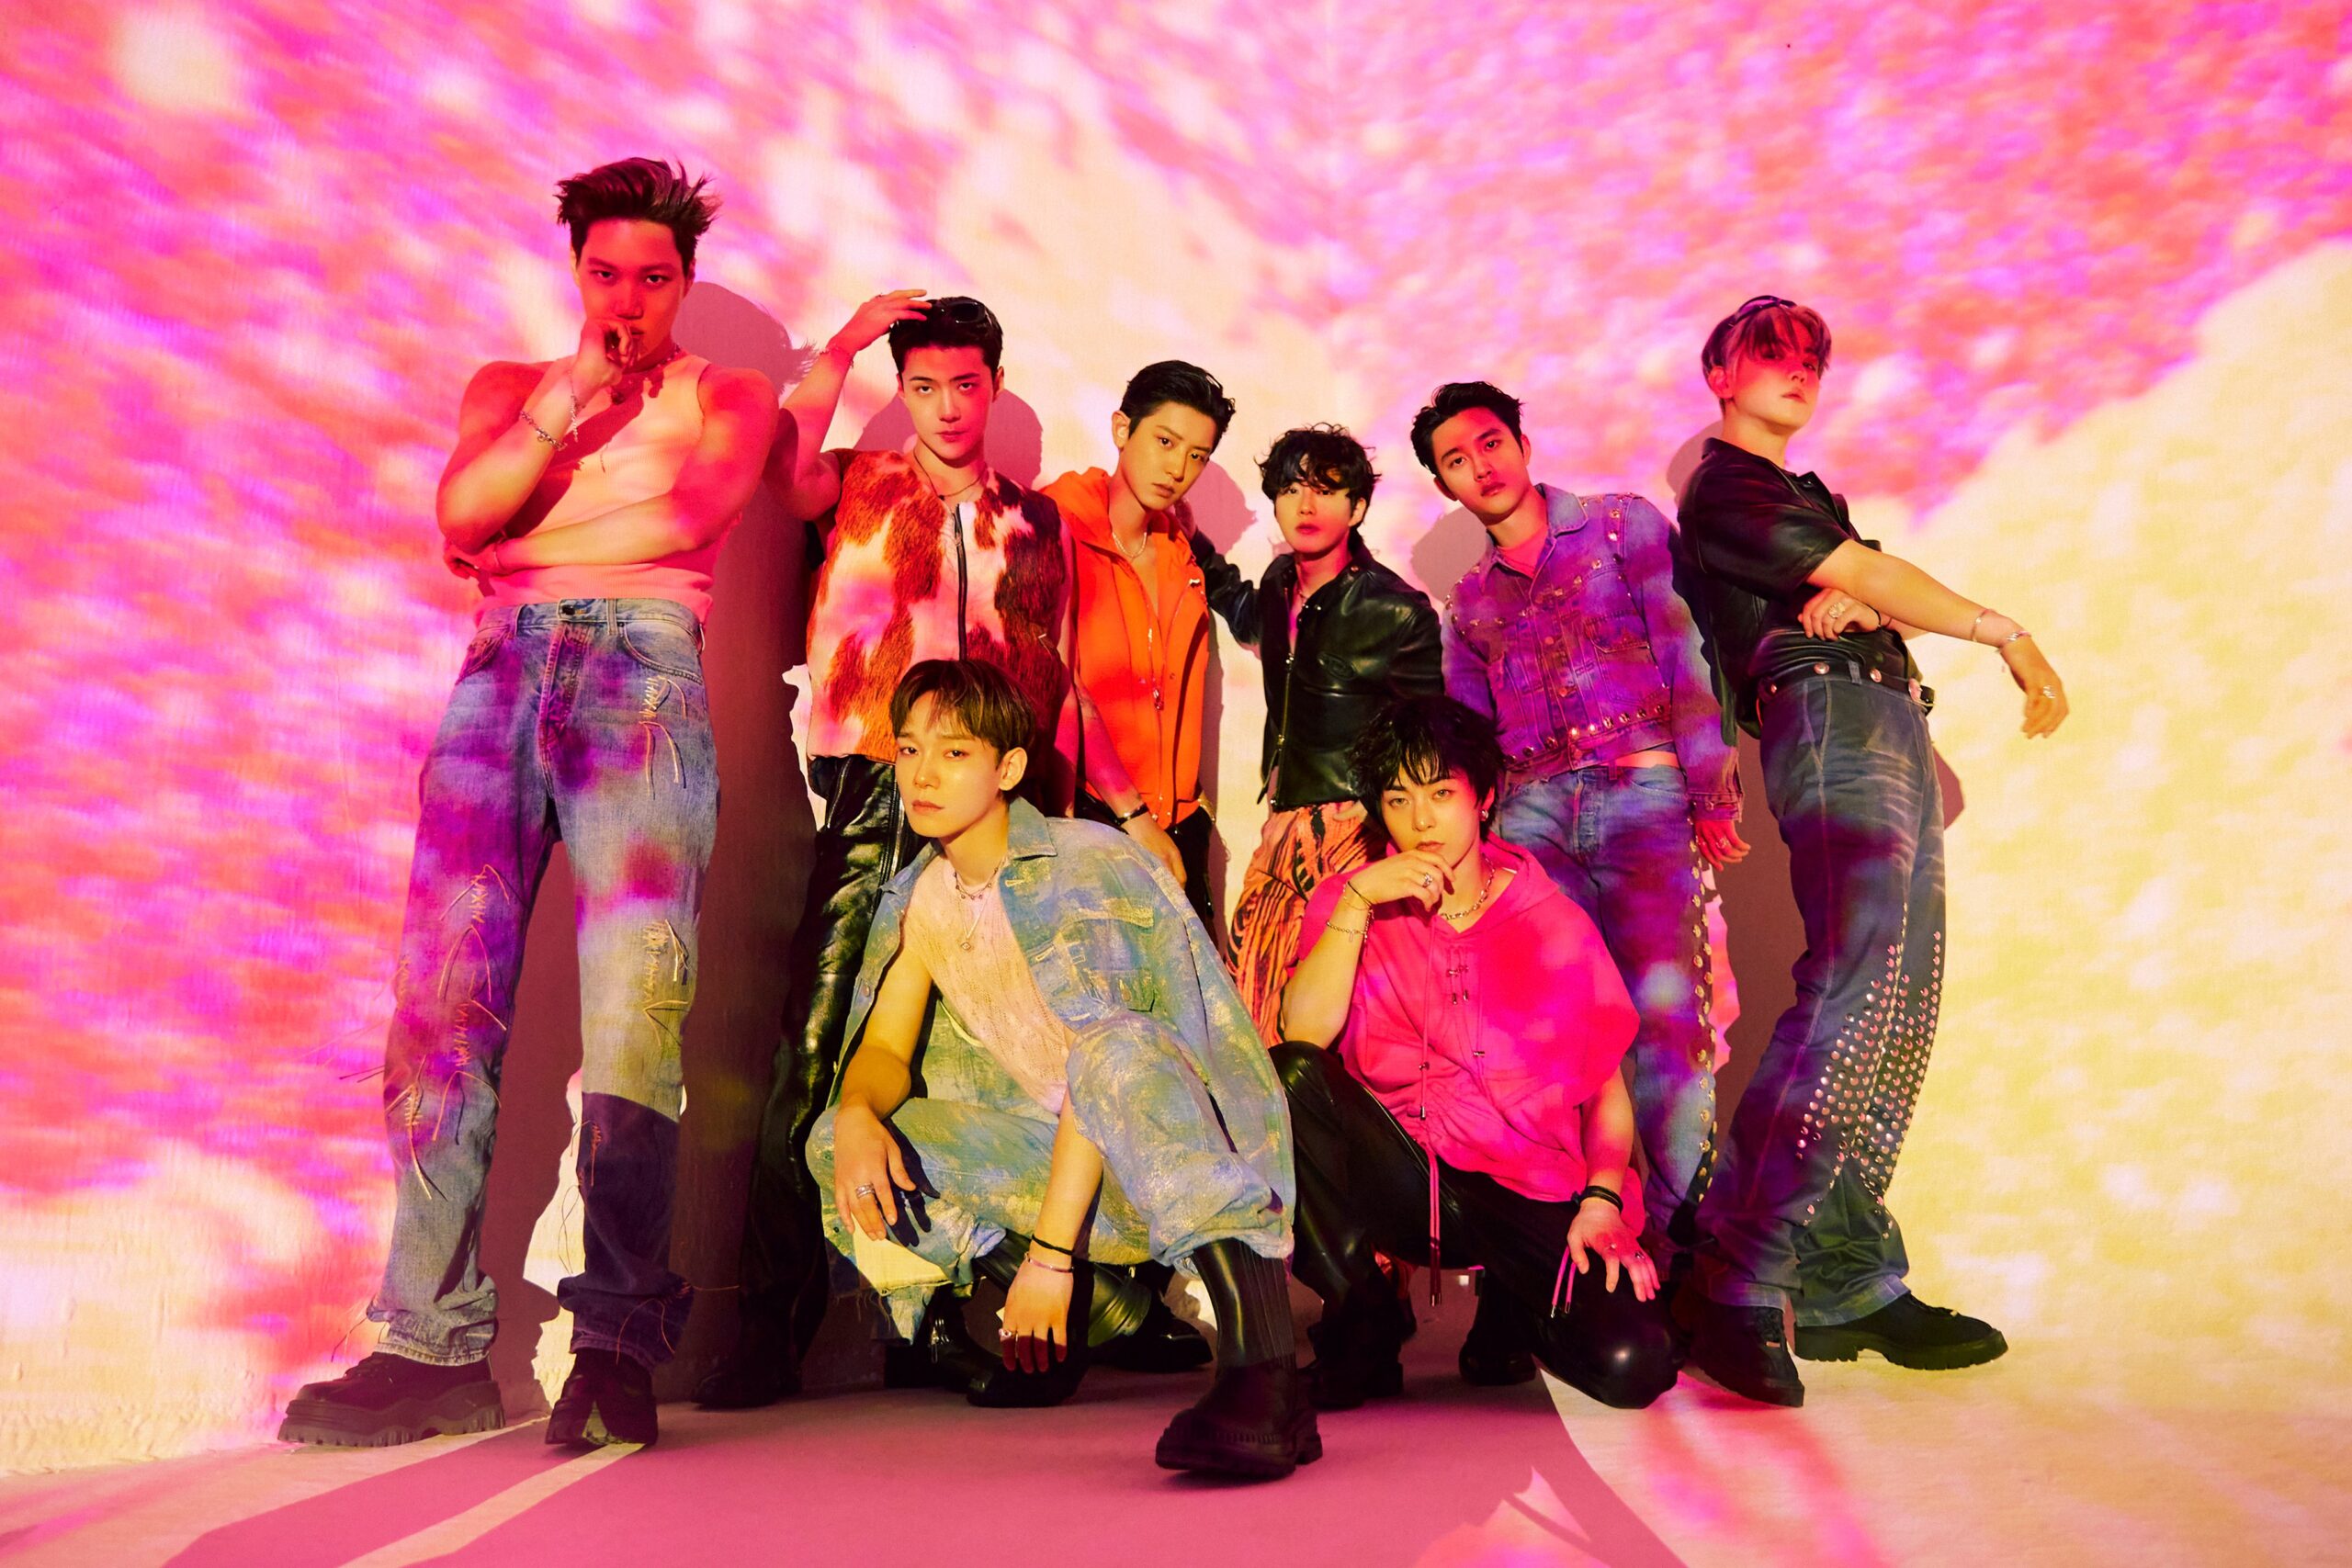 Fotografia promocional do álbum EXIST do grupo sul-coreano EXO. Na imagem, oito dos nove integrantes posam em um estúdio coberto por projeções ilusionistas. Da esquerda para a direita do retrato, os membros: Kai, Sehun, Chen, Chanyeol, Suho, Xiumin, D.O e Baekhyun. Todos são homens sul-coreanos que vestem roupas despojadas.